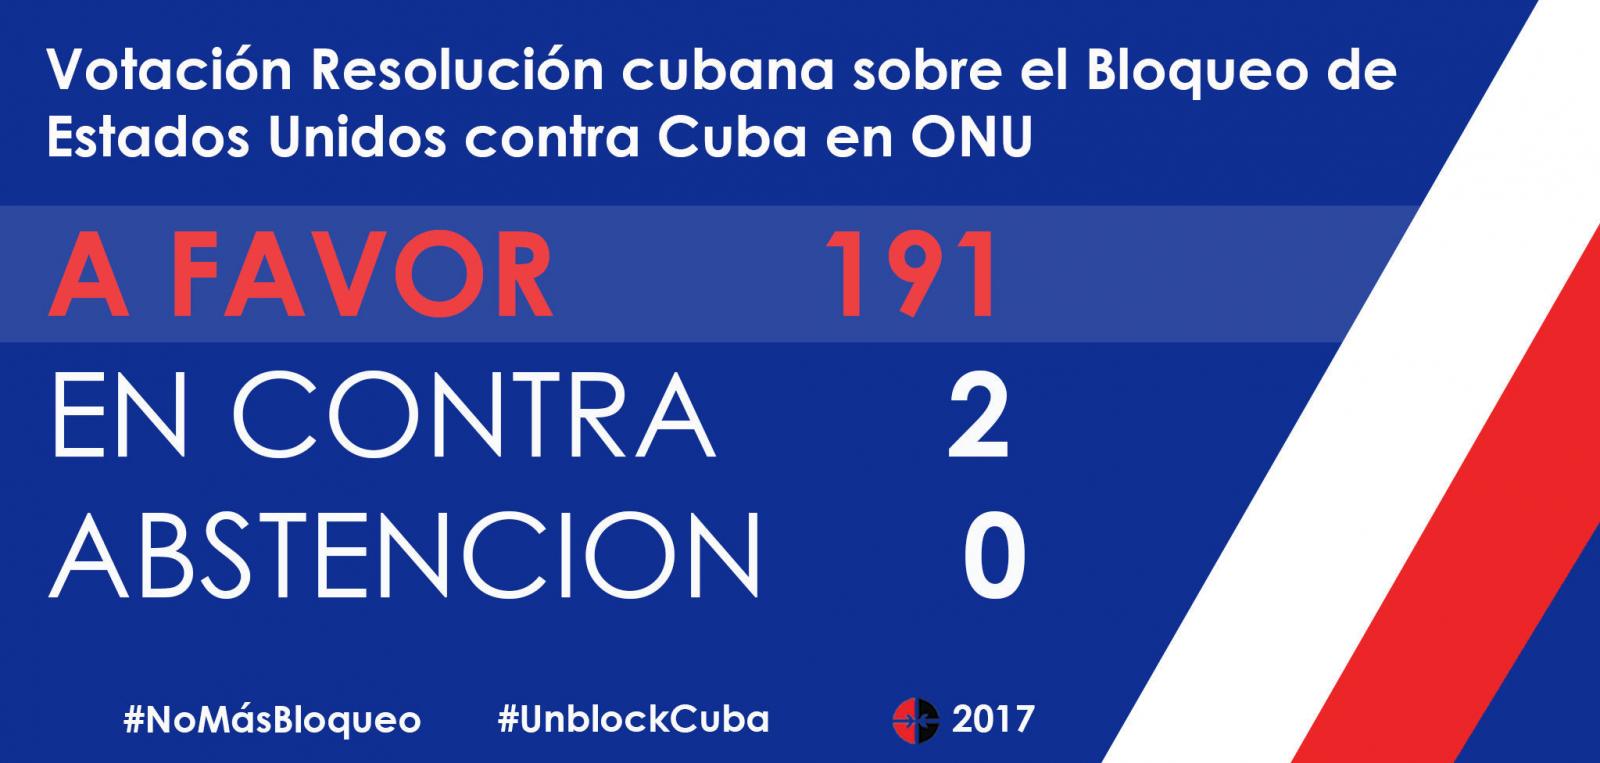 Votación favorable a Cuba